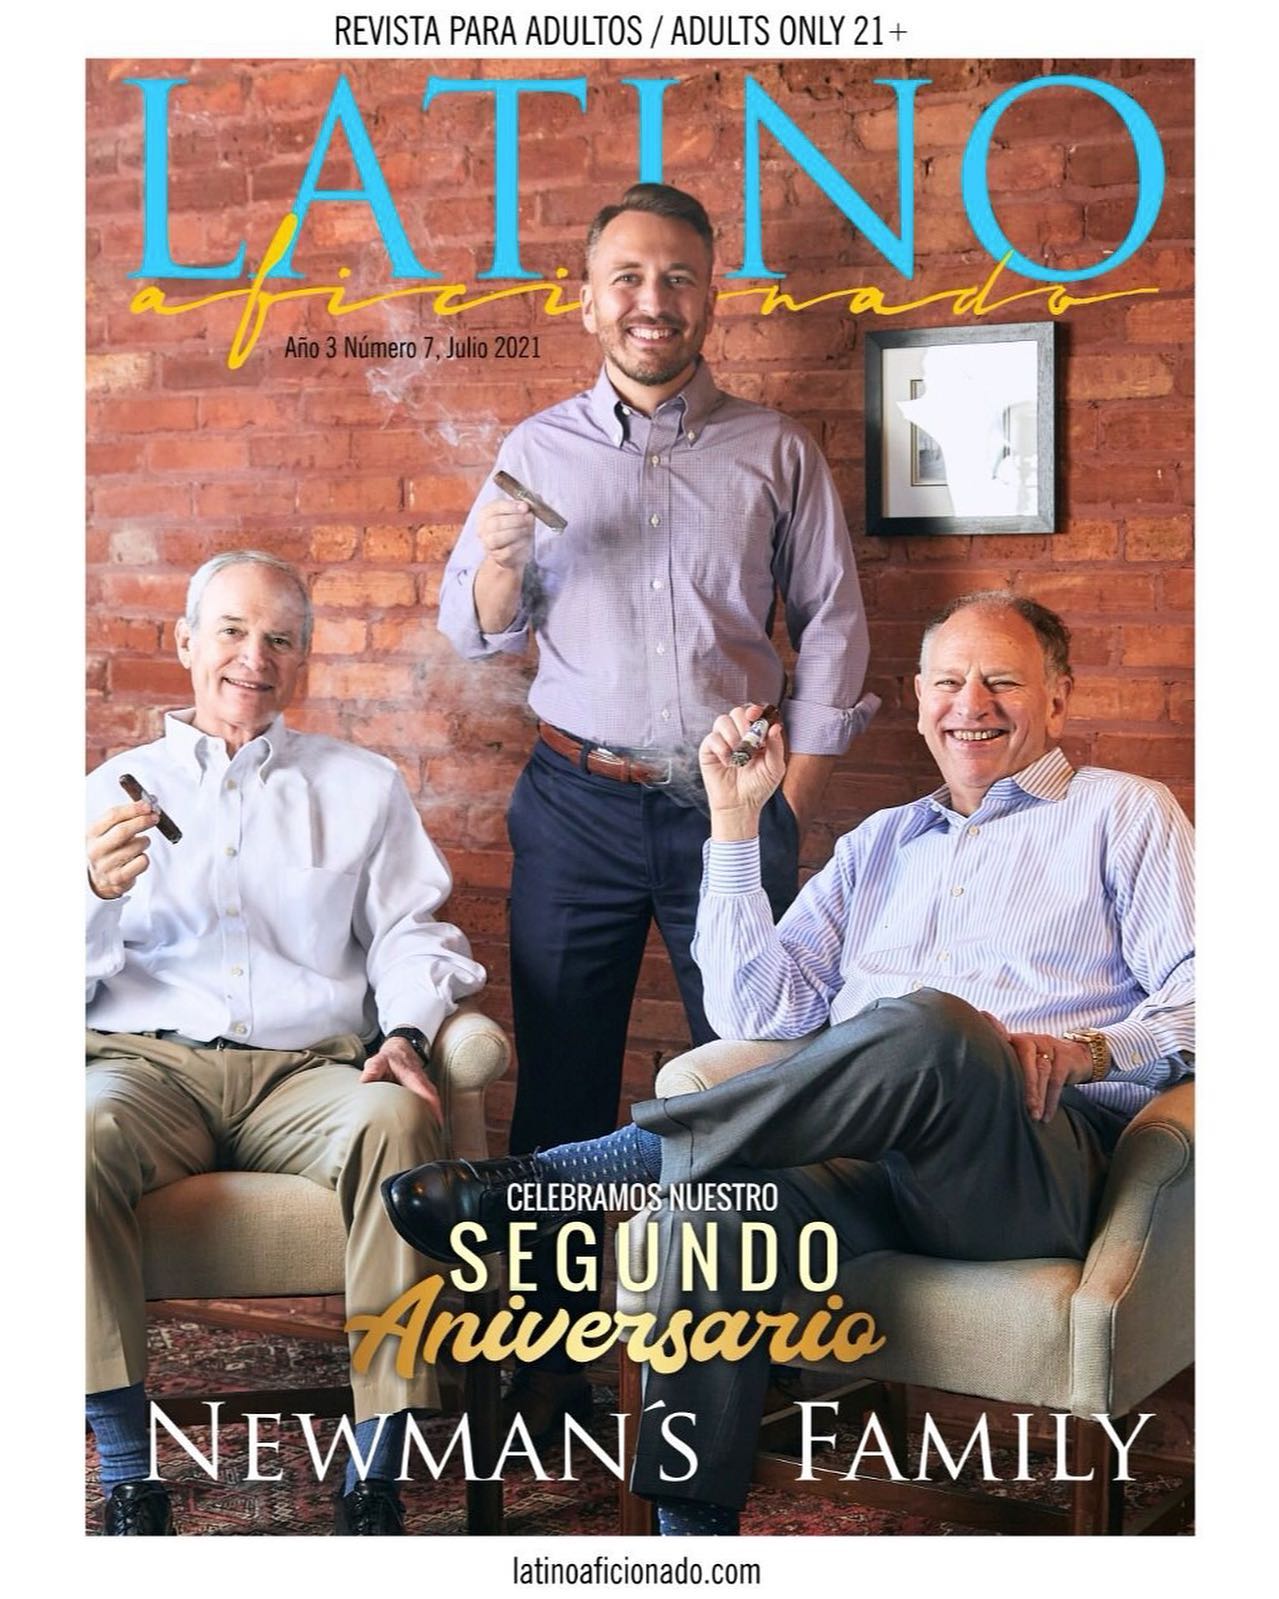 Acabou de sair a nova edição da revista “Latino Aficionado”, e desta vez, traz na capa a Família Newman’s, que abriram as portas da fábrica e concederam uma entrevista espetacular